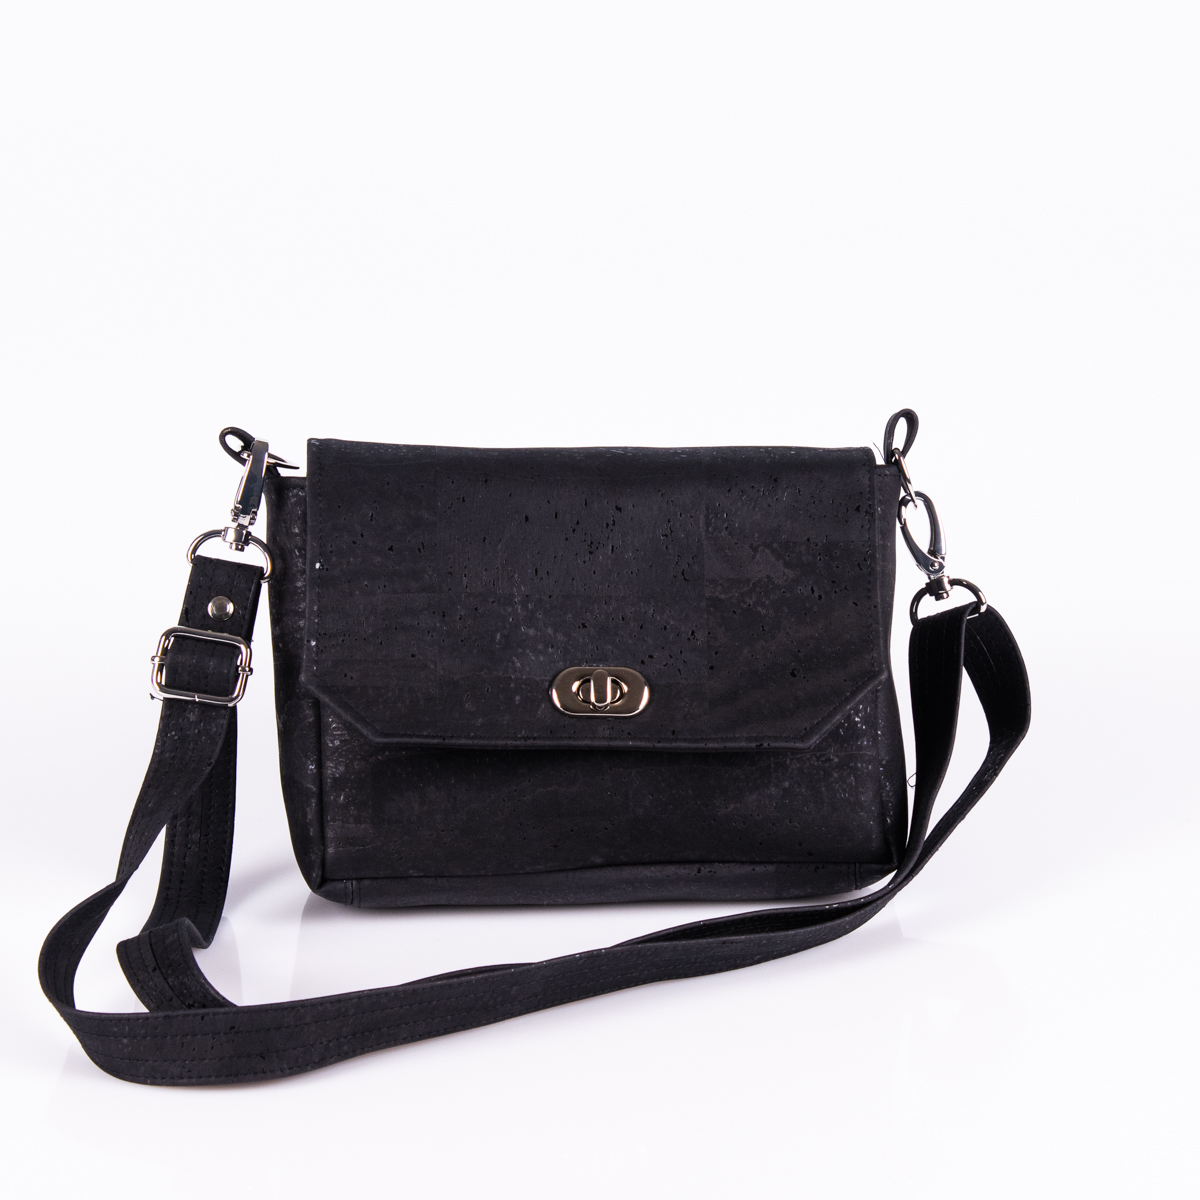 Handtasche Sally in Schwarz von Q.Linda Manufaktur Vorderansicht mit schwarzen Gurt